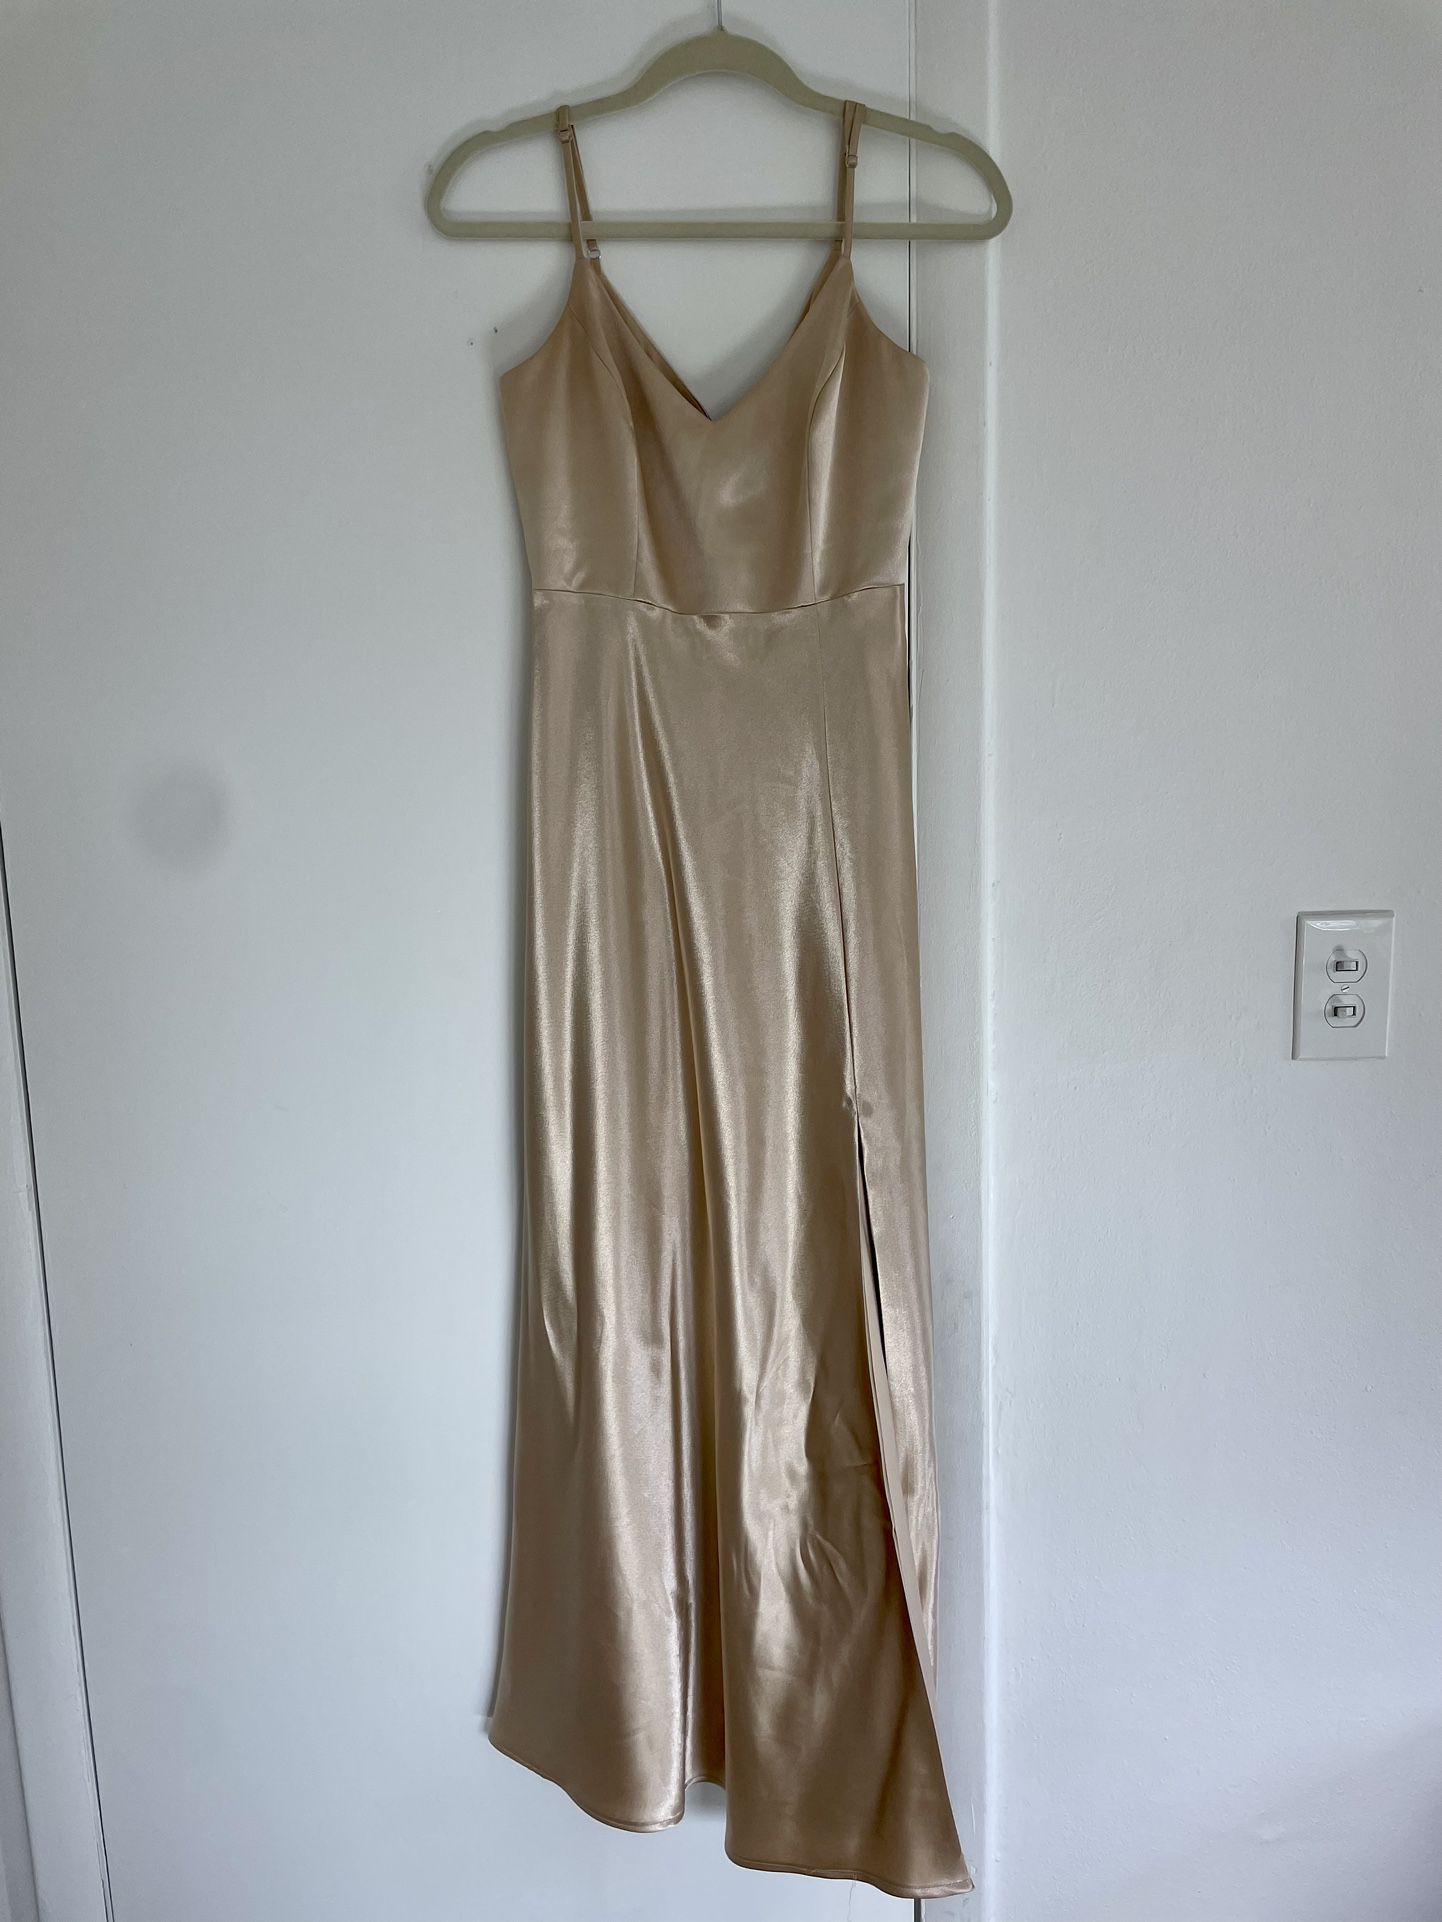 Bridesmaid Dress Size XS - Like New